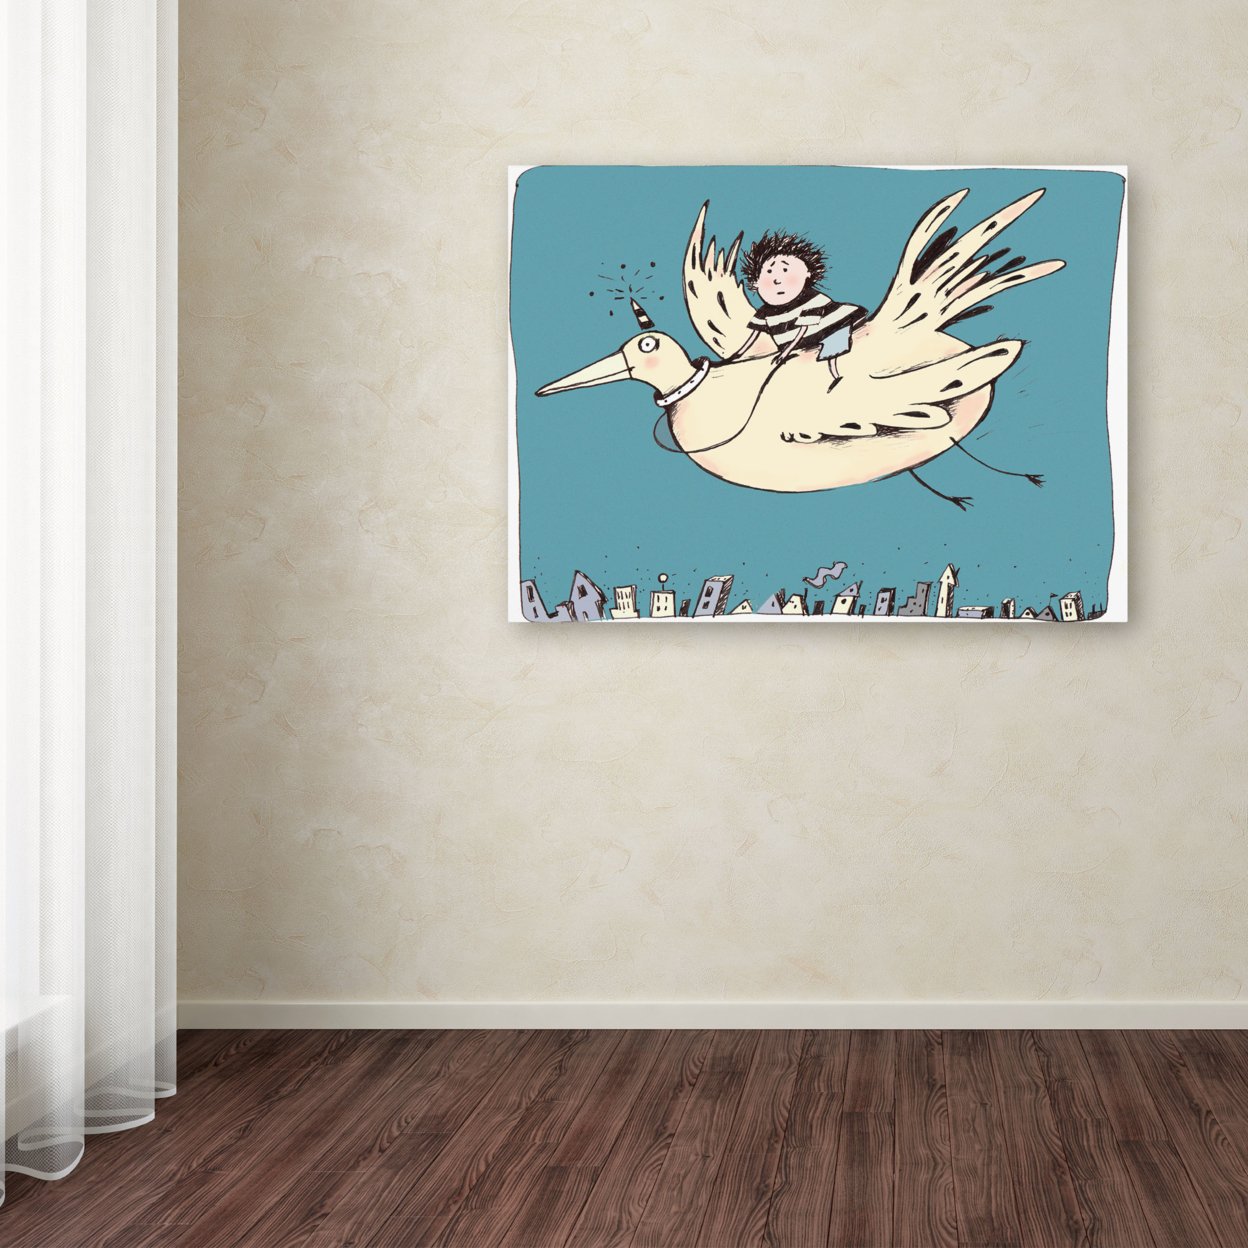 Carla Martell 'Boy On Bird' Canvas Wall Art 35 X 47 Inches